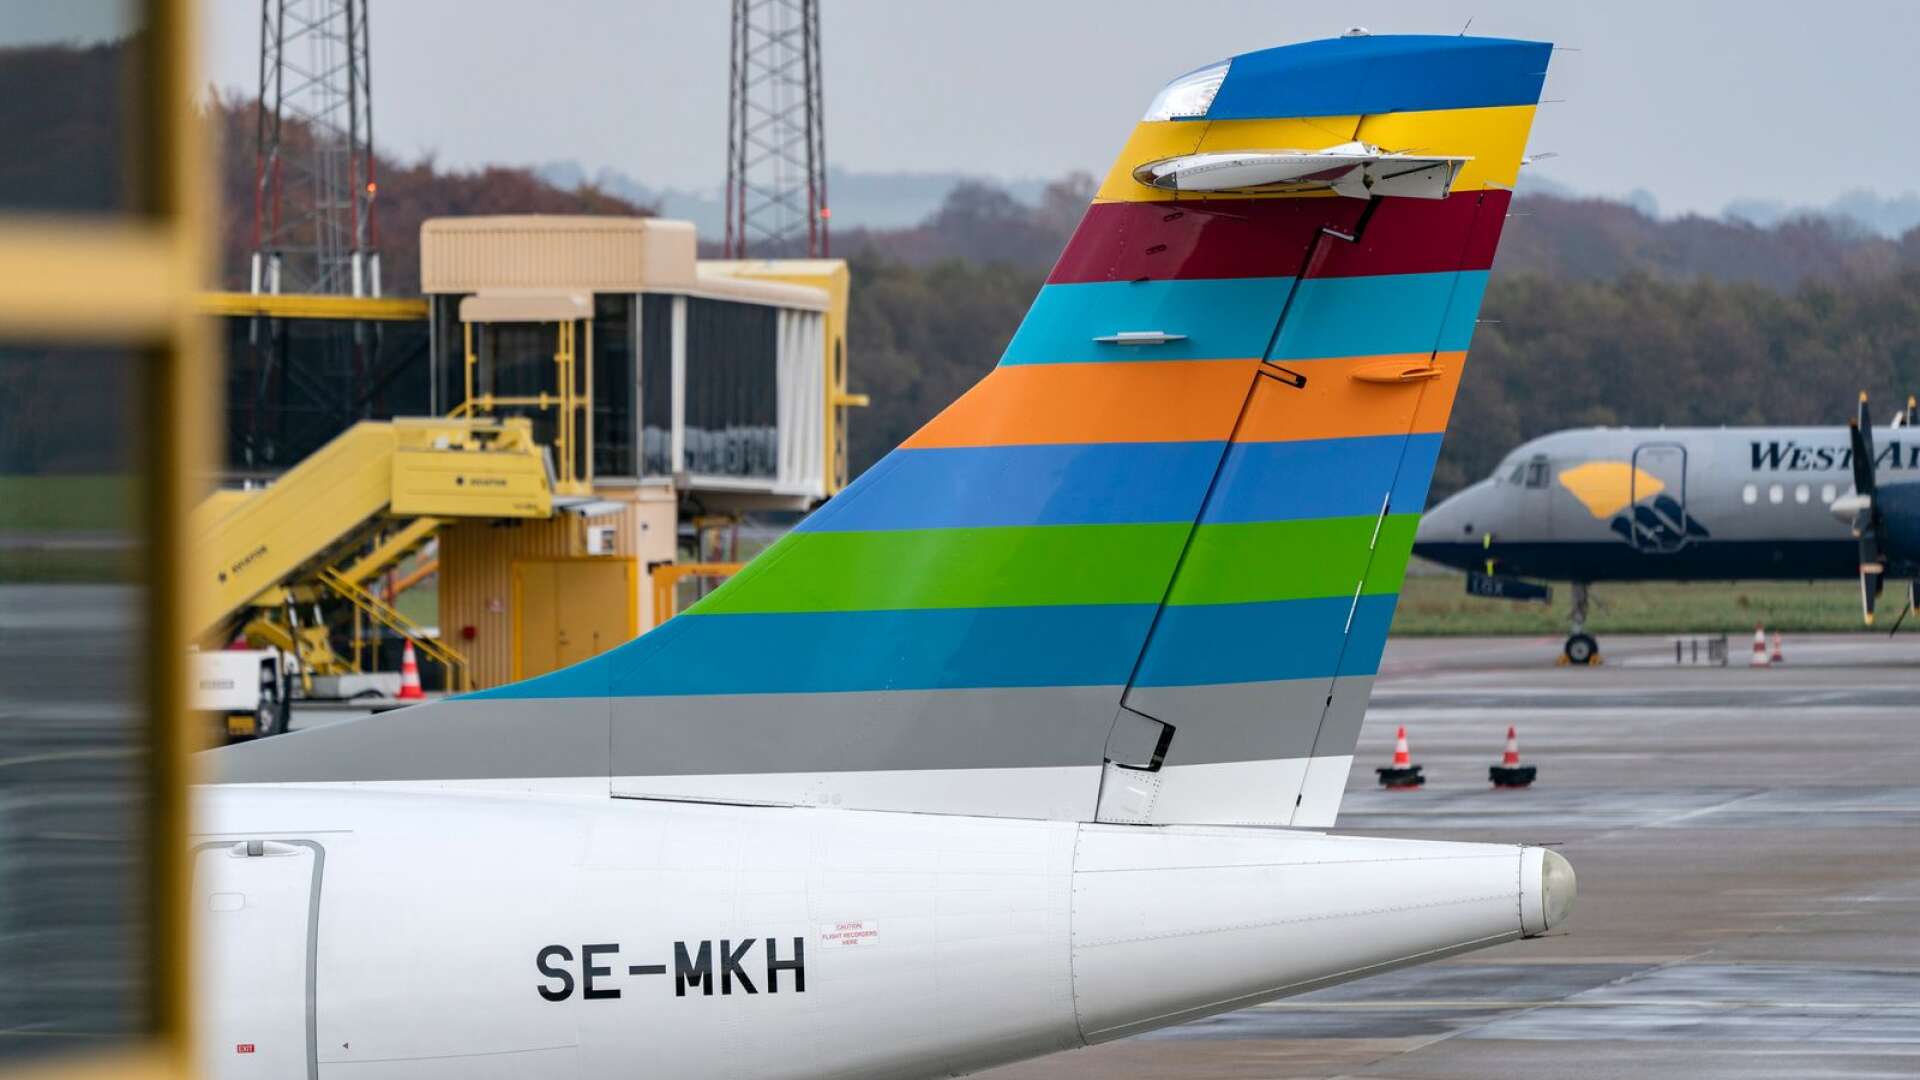 Testflygningen ägde rum den 21 juni från Malmö flygplats till Bromma flygplats i Stockholm. Vad som utmärker resan är att planets båda motorer tankades med förnybart bränsle, skriver Daniel Åkerman.